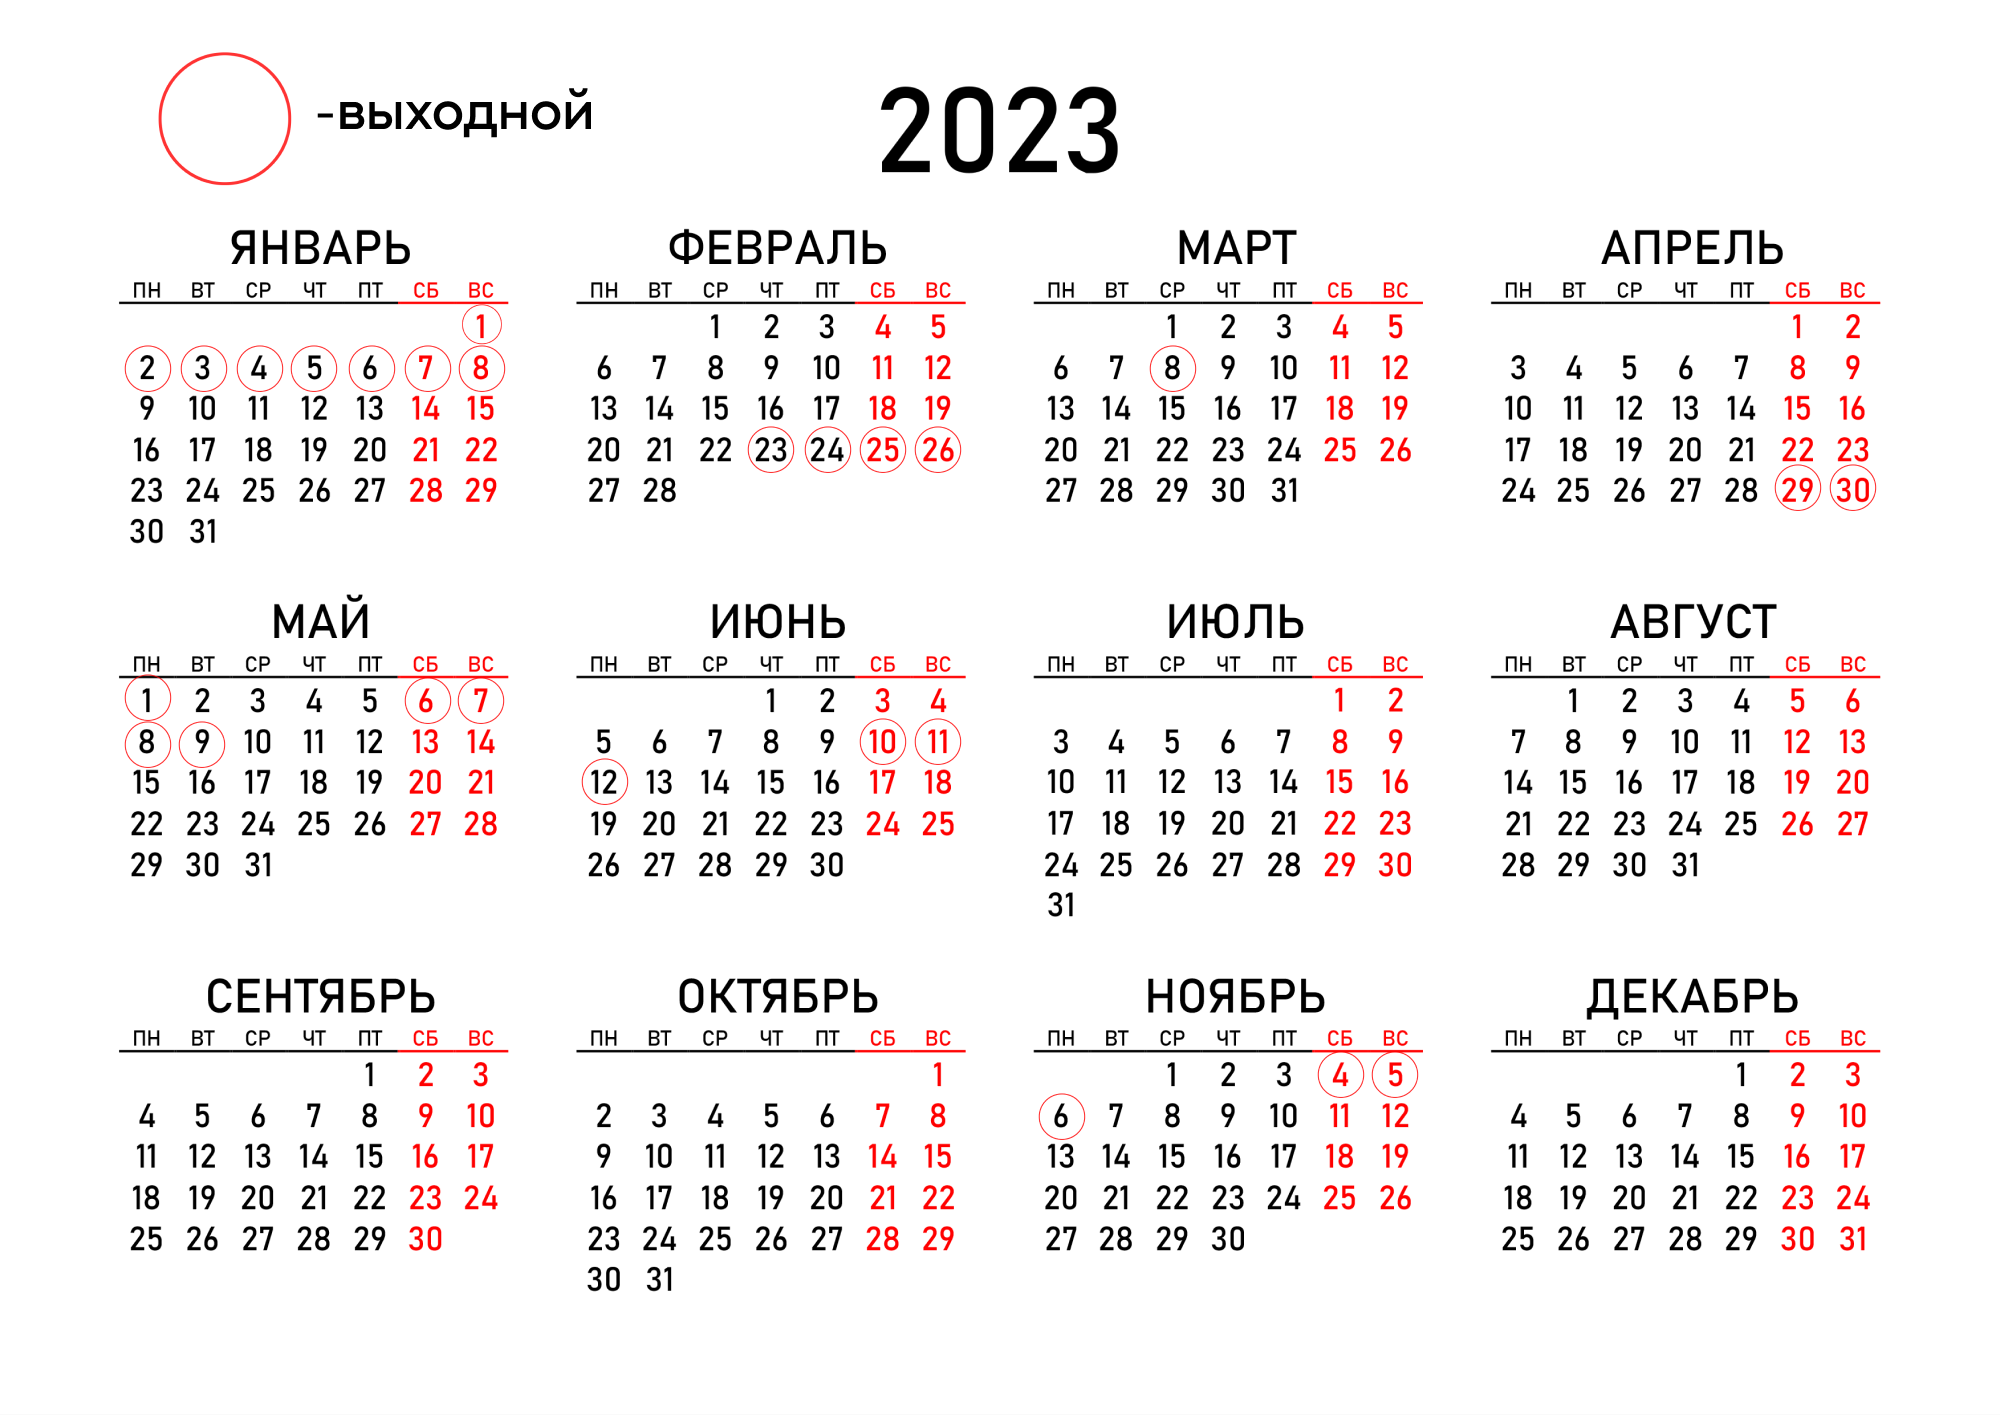 Календарь новогодних праздников 2023 2024. Календарь карманный 2020-2021. Календарь производственный на 2021 календарь производственный на 2021. Календарик карманный 2021. Календарь 2020-2021 а4.